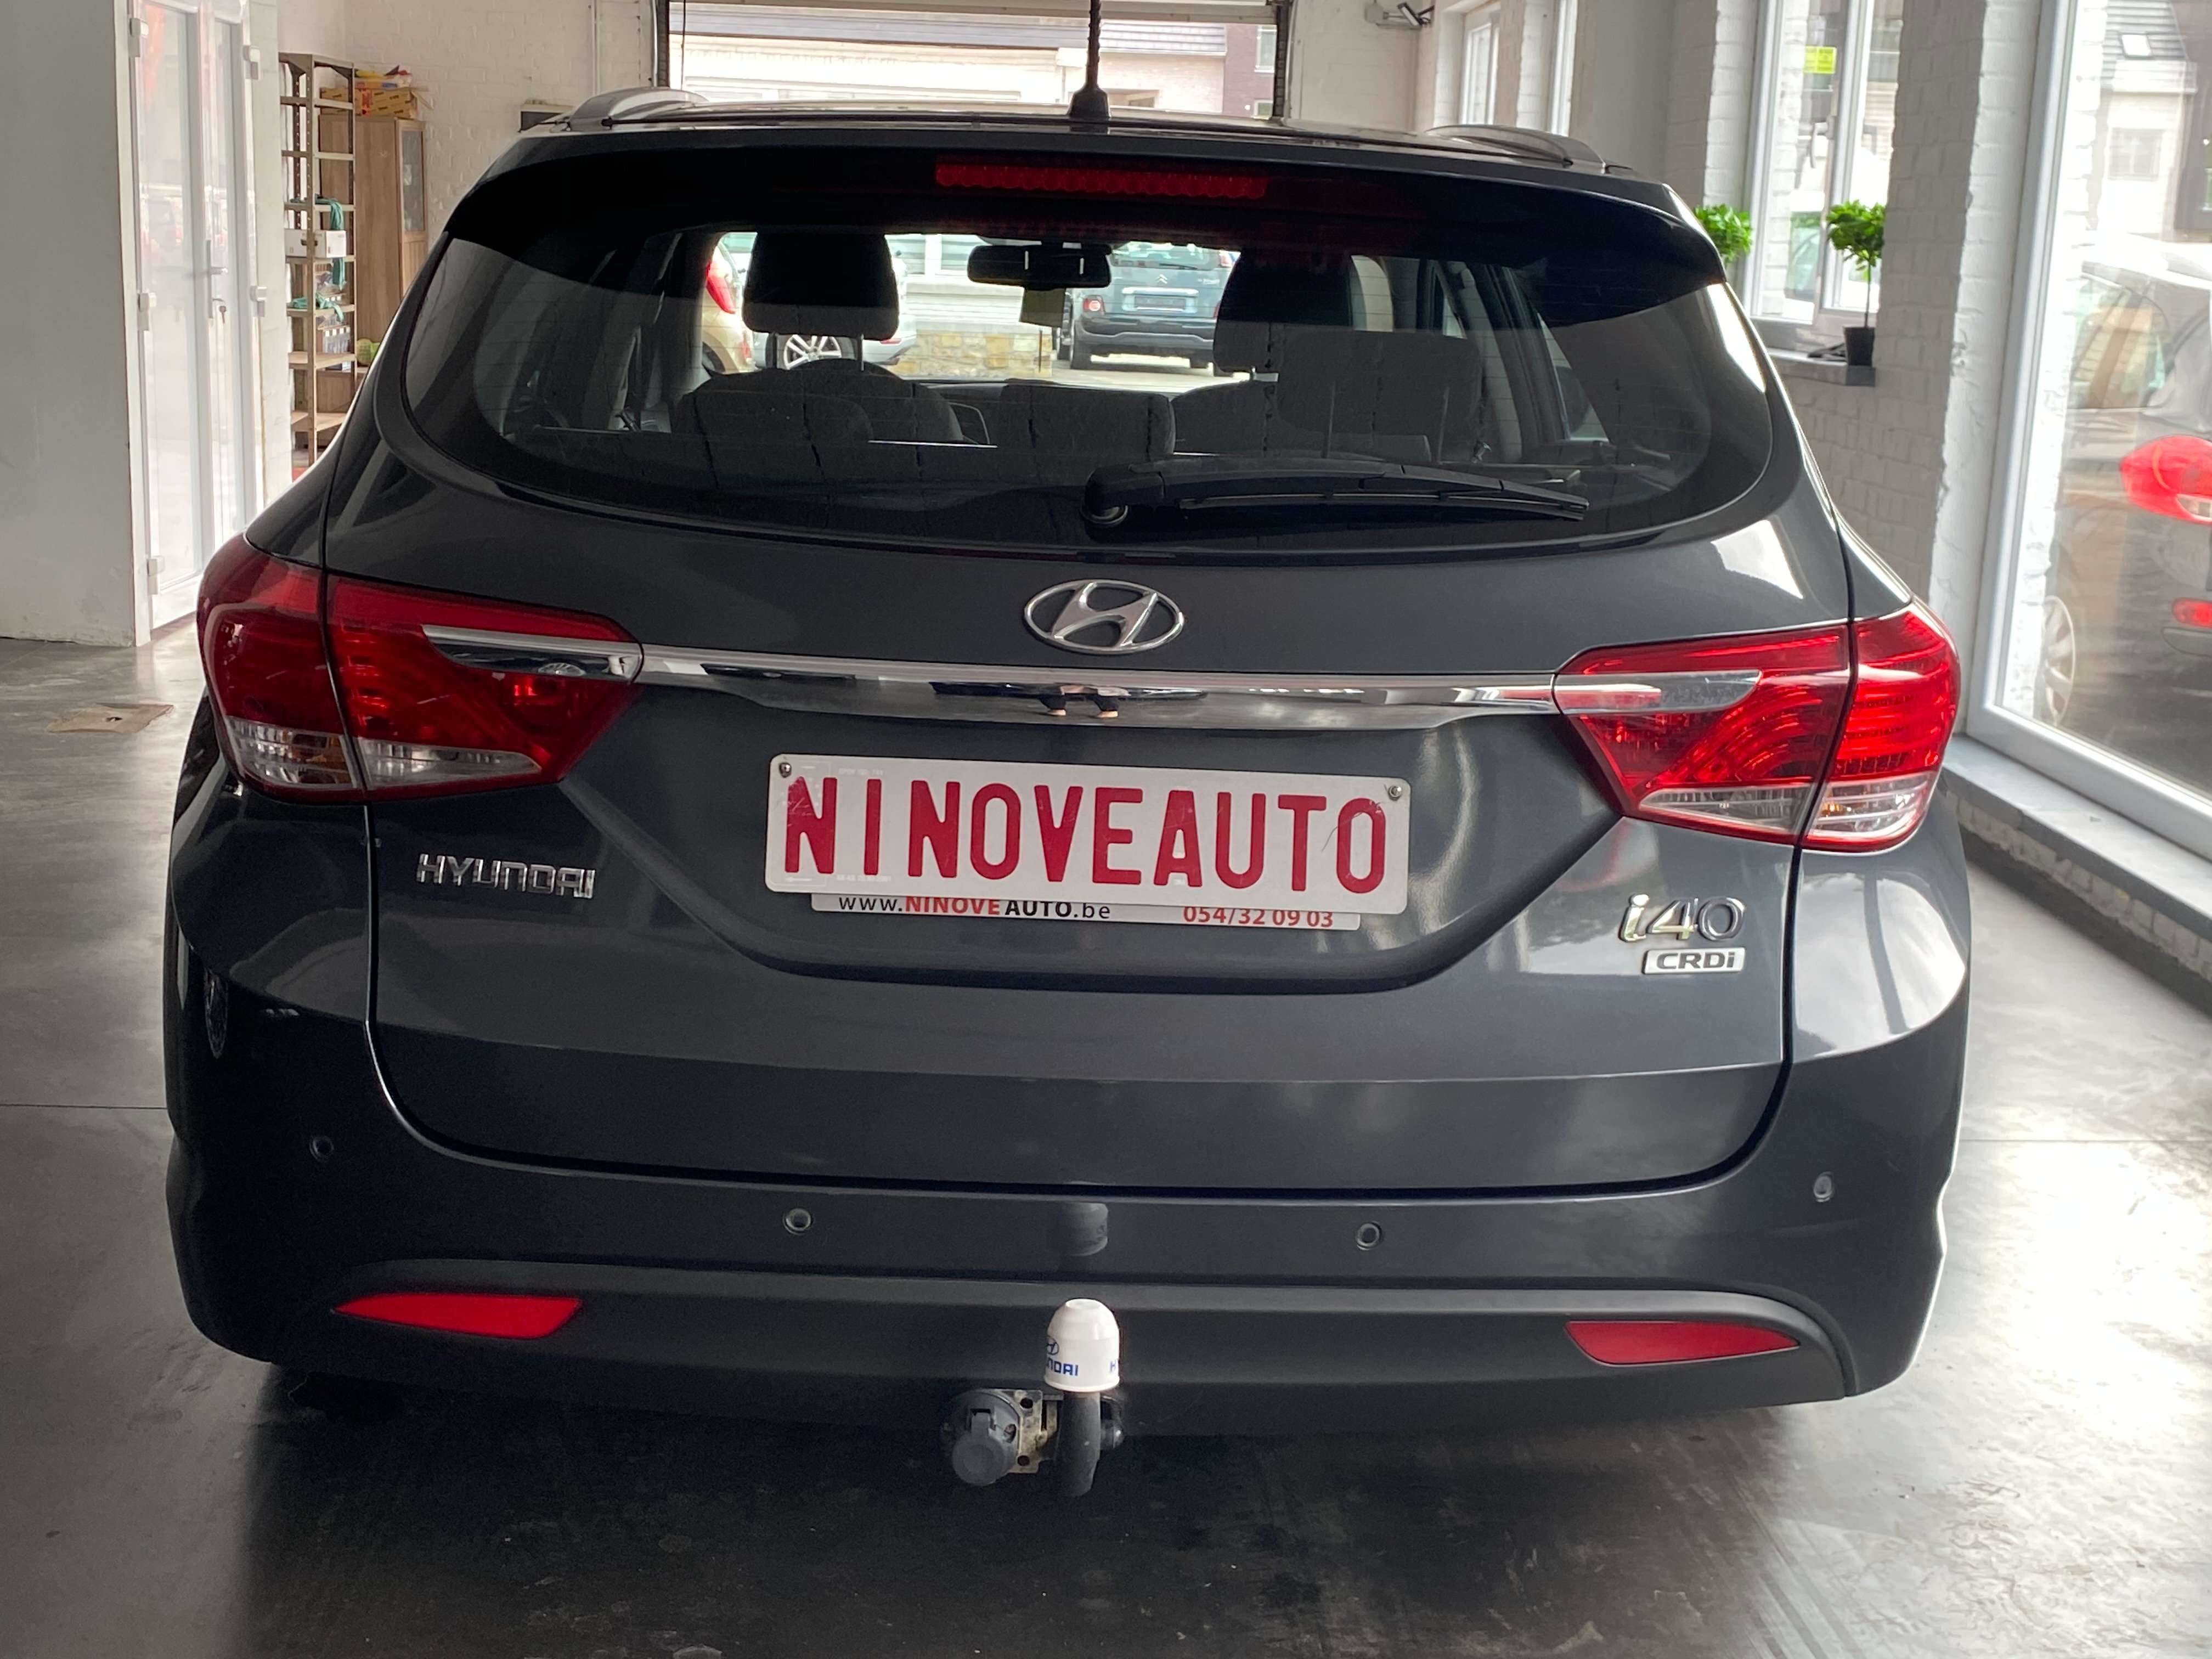 Ninove auto - Hyundai i40